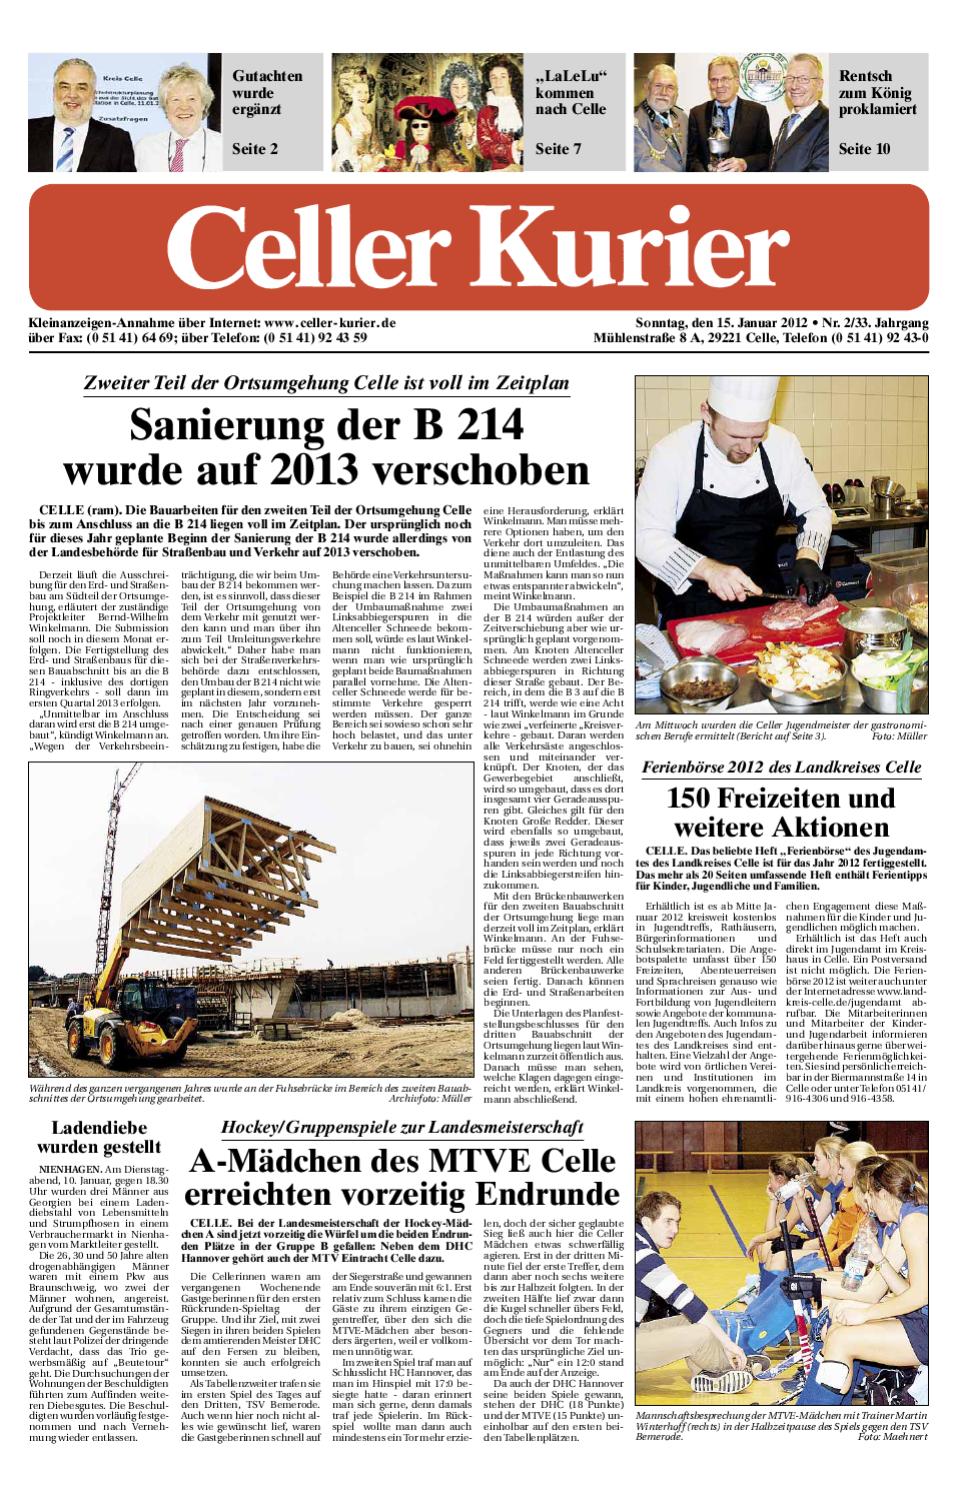 Leisewitz Garten Celle Genial Cks 15 01 2012 by Verlag Lokalpresse Gmbh issuu